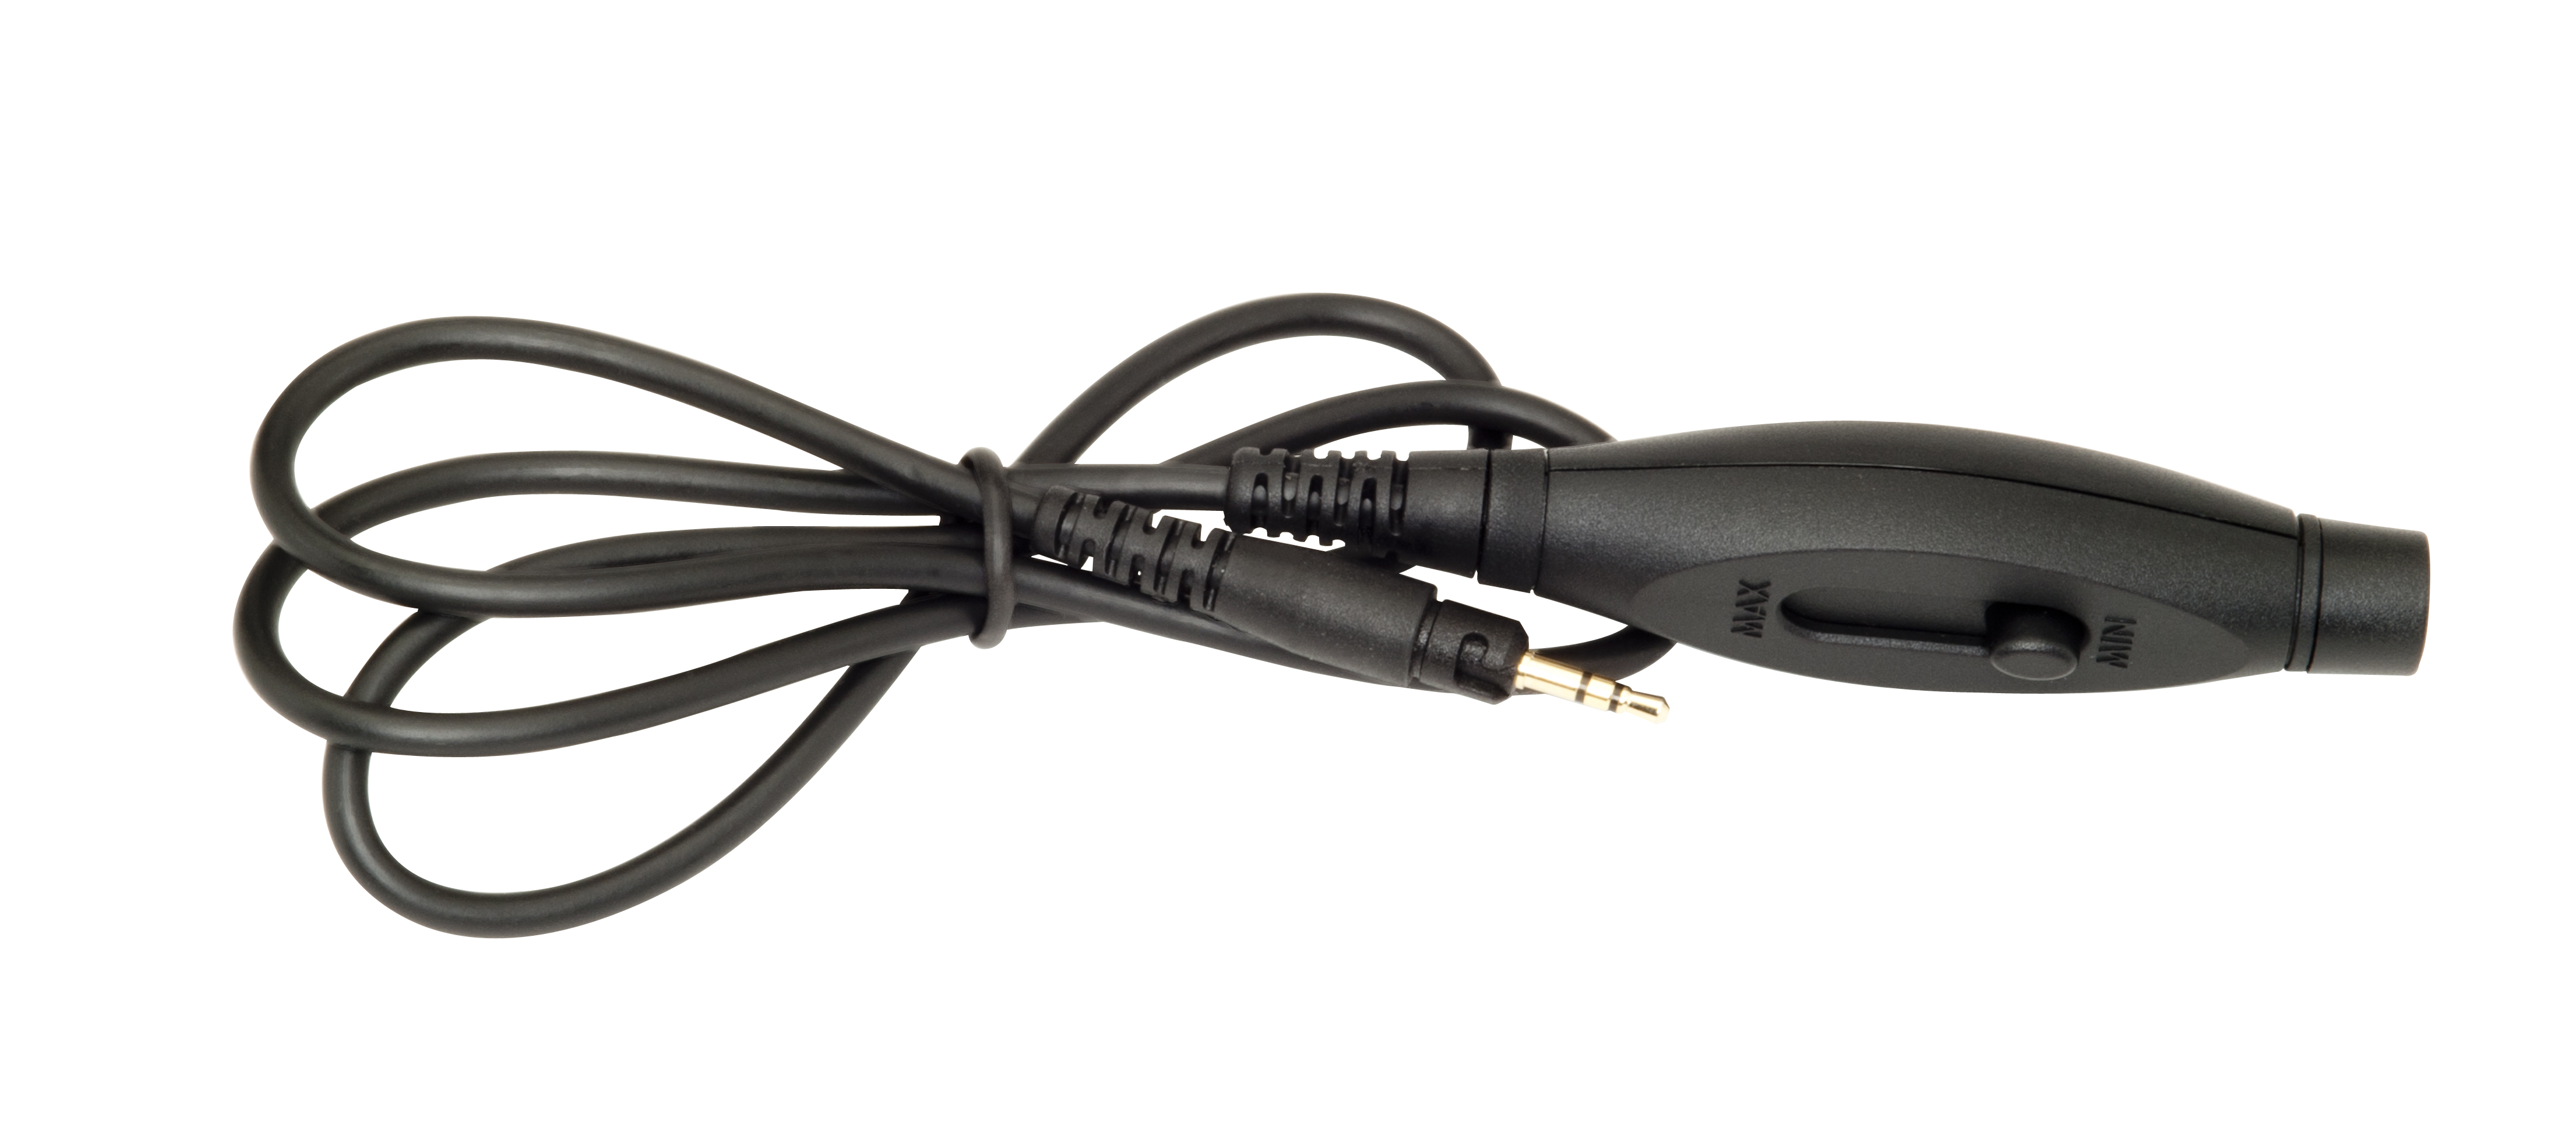 KRK KRK KNS In-Line Volume Control Headphone Cable